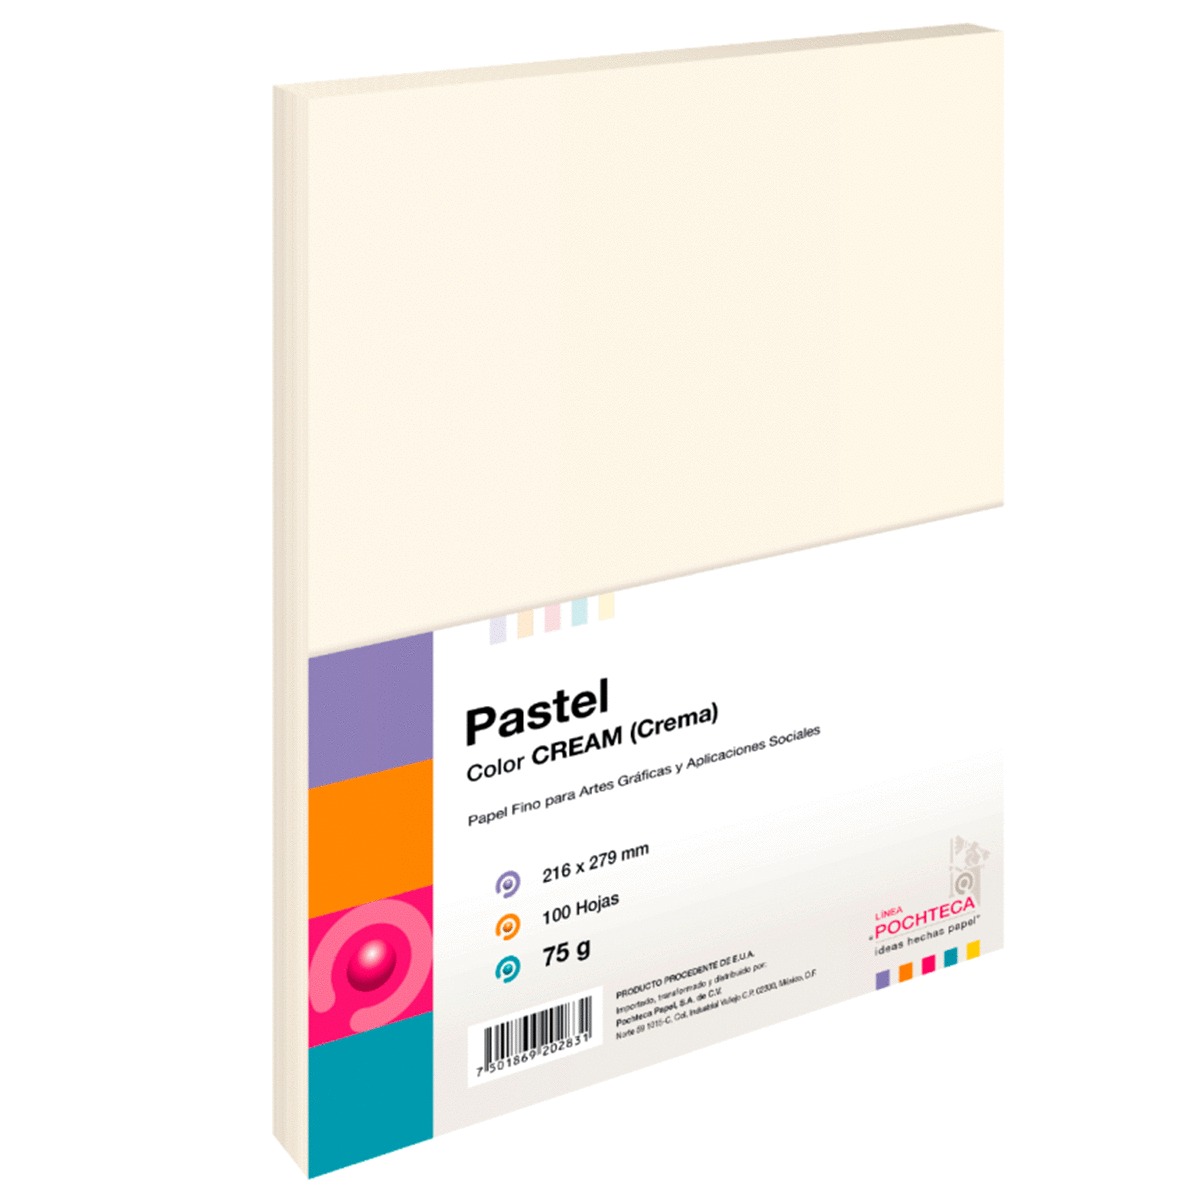 Hojas de Color Pochteca Pastel / Paquete 100 hojas / Carta / Crema / 75 gr